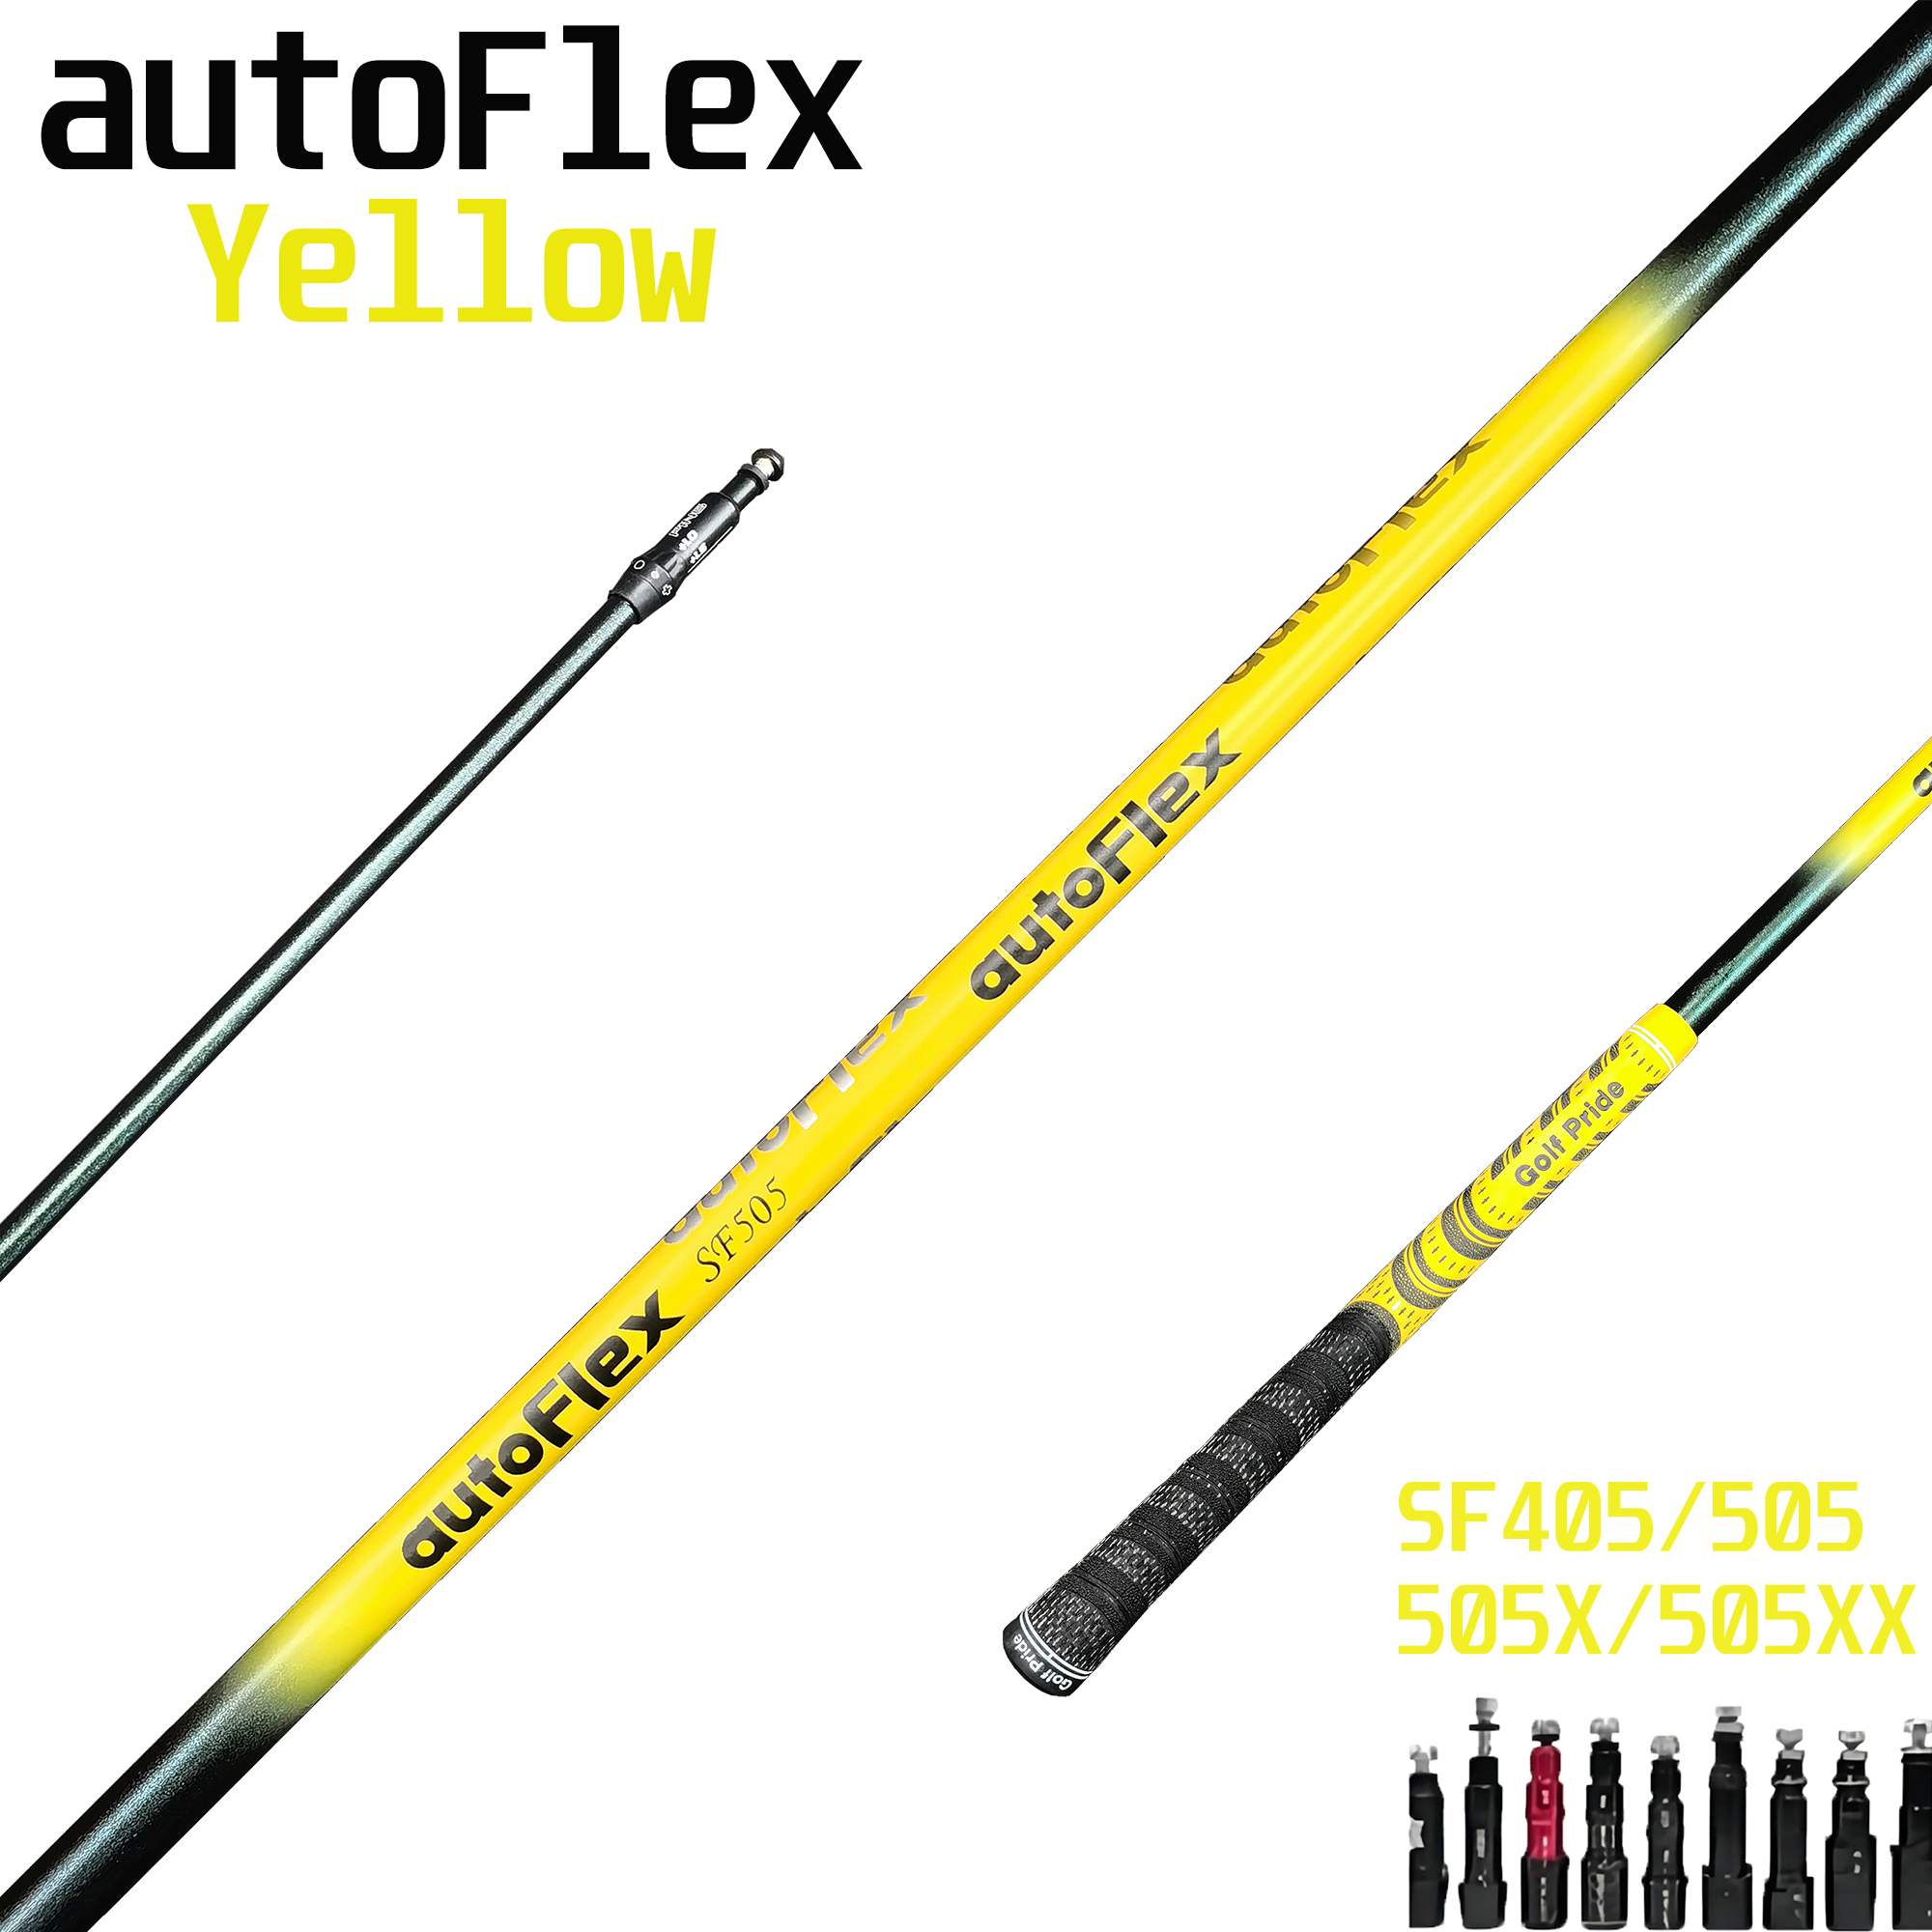 Asta da golf Autoflex Driver, aste in grafite Flex gialla o blu, manicotto e impugnatura con assemblaggio gratuito, nuovo, SF505xx, SF505, SF505x